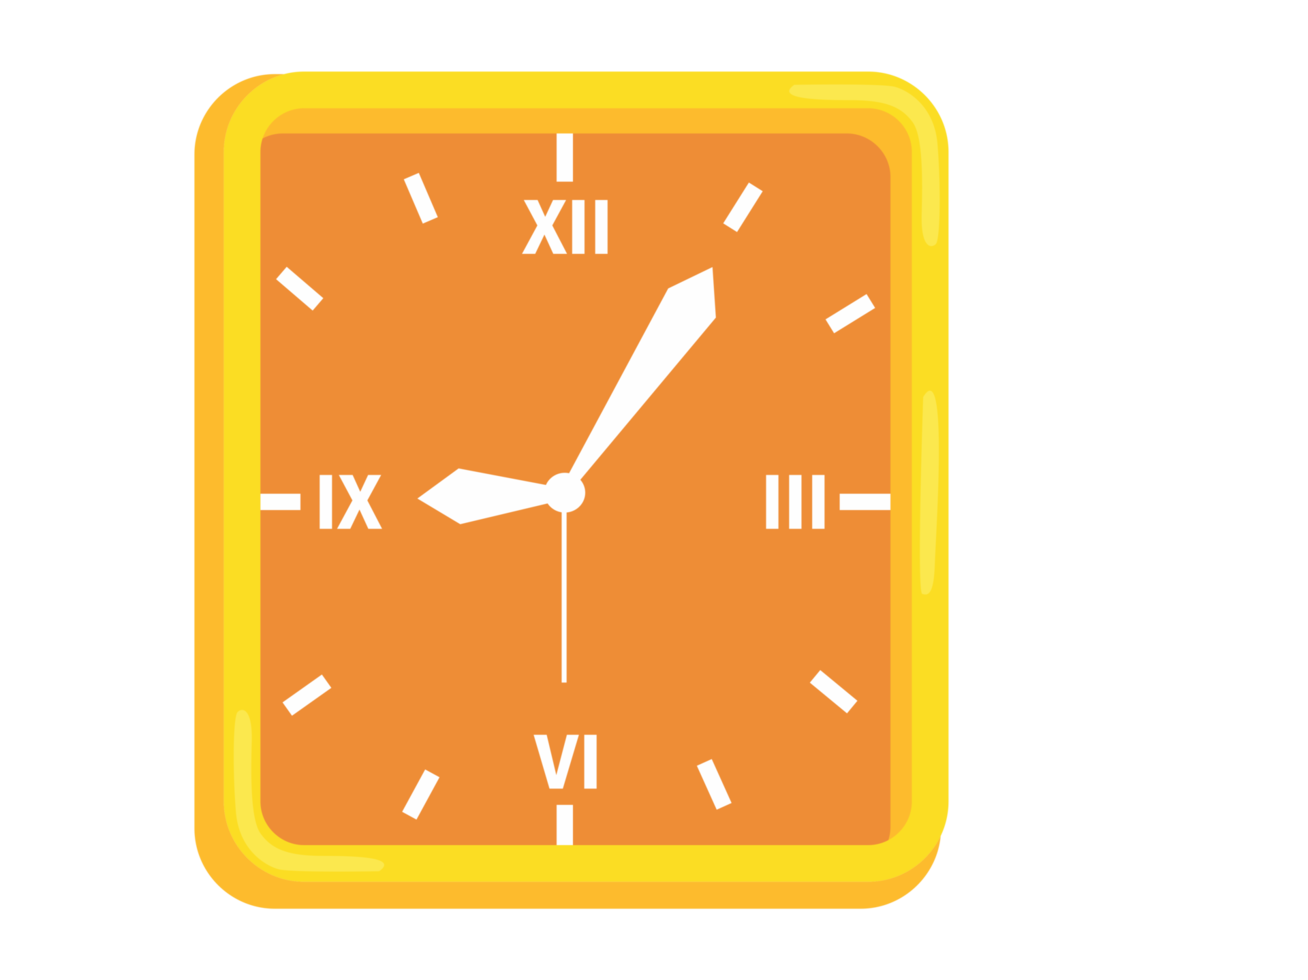 objeto - relógio com formato quadrado png